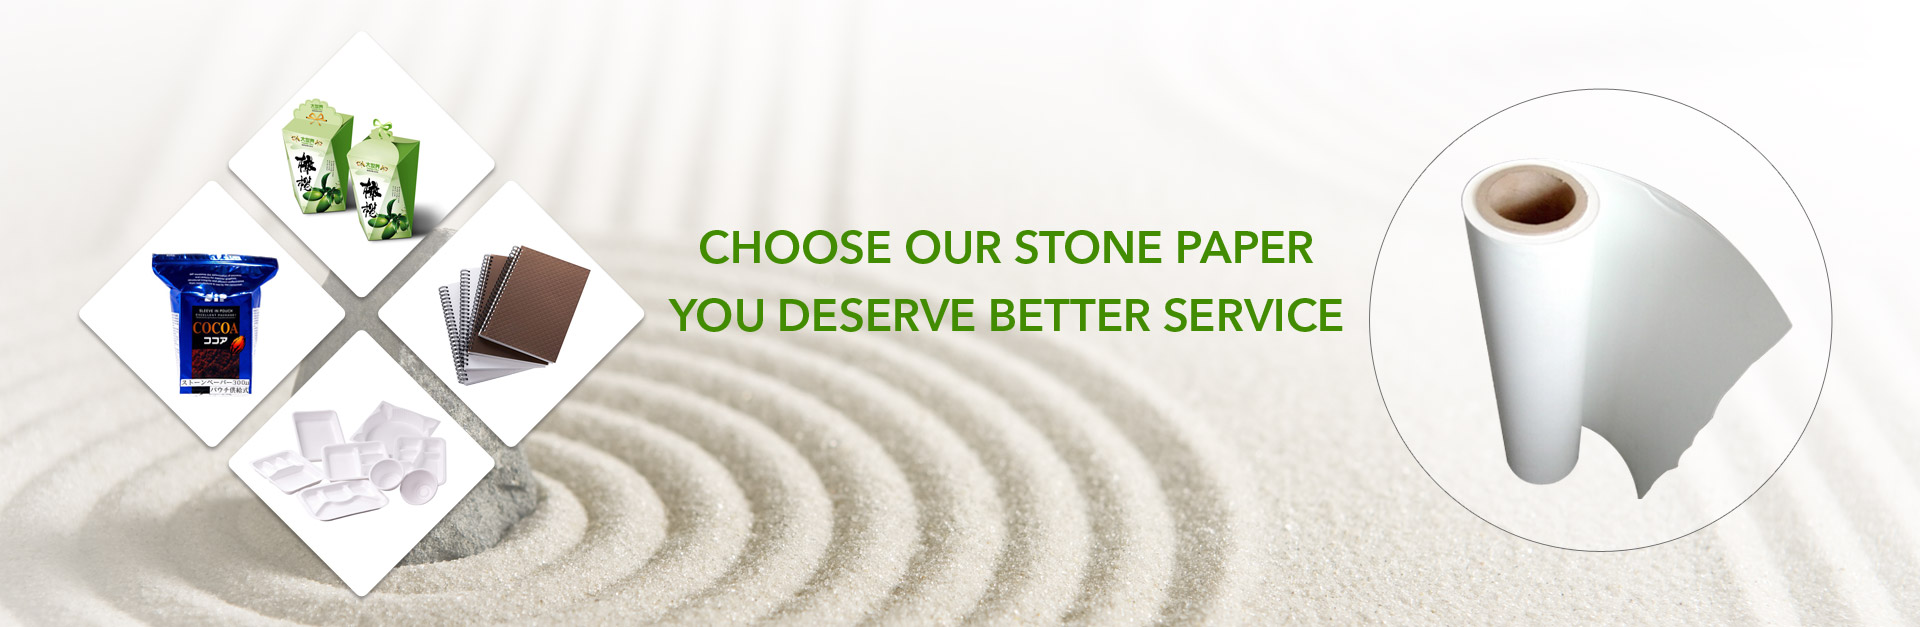 Sobre las excelentes propiedades del papel de piedra.